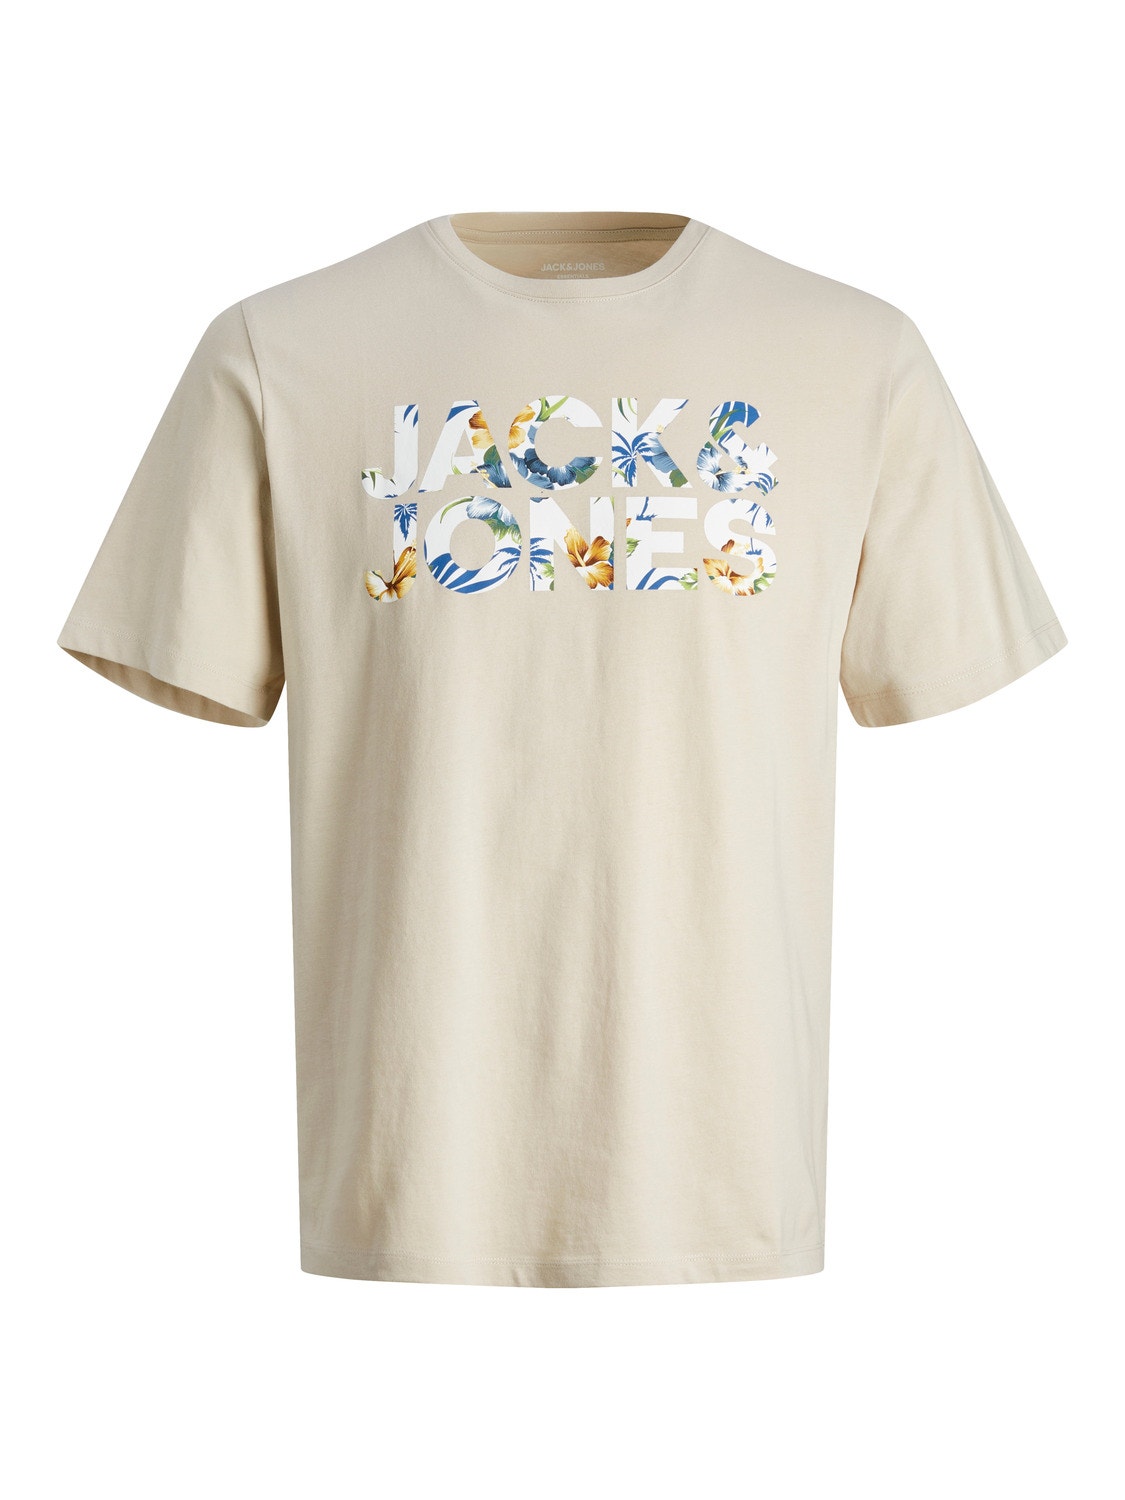 Jack & Jones T-shirt Stampato Per Bambino -Moonbeam - 12250800